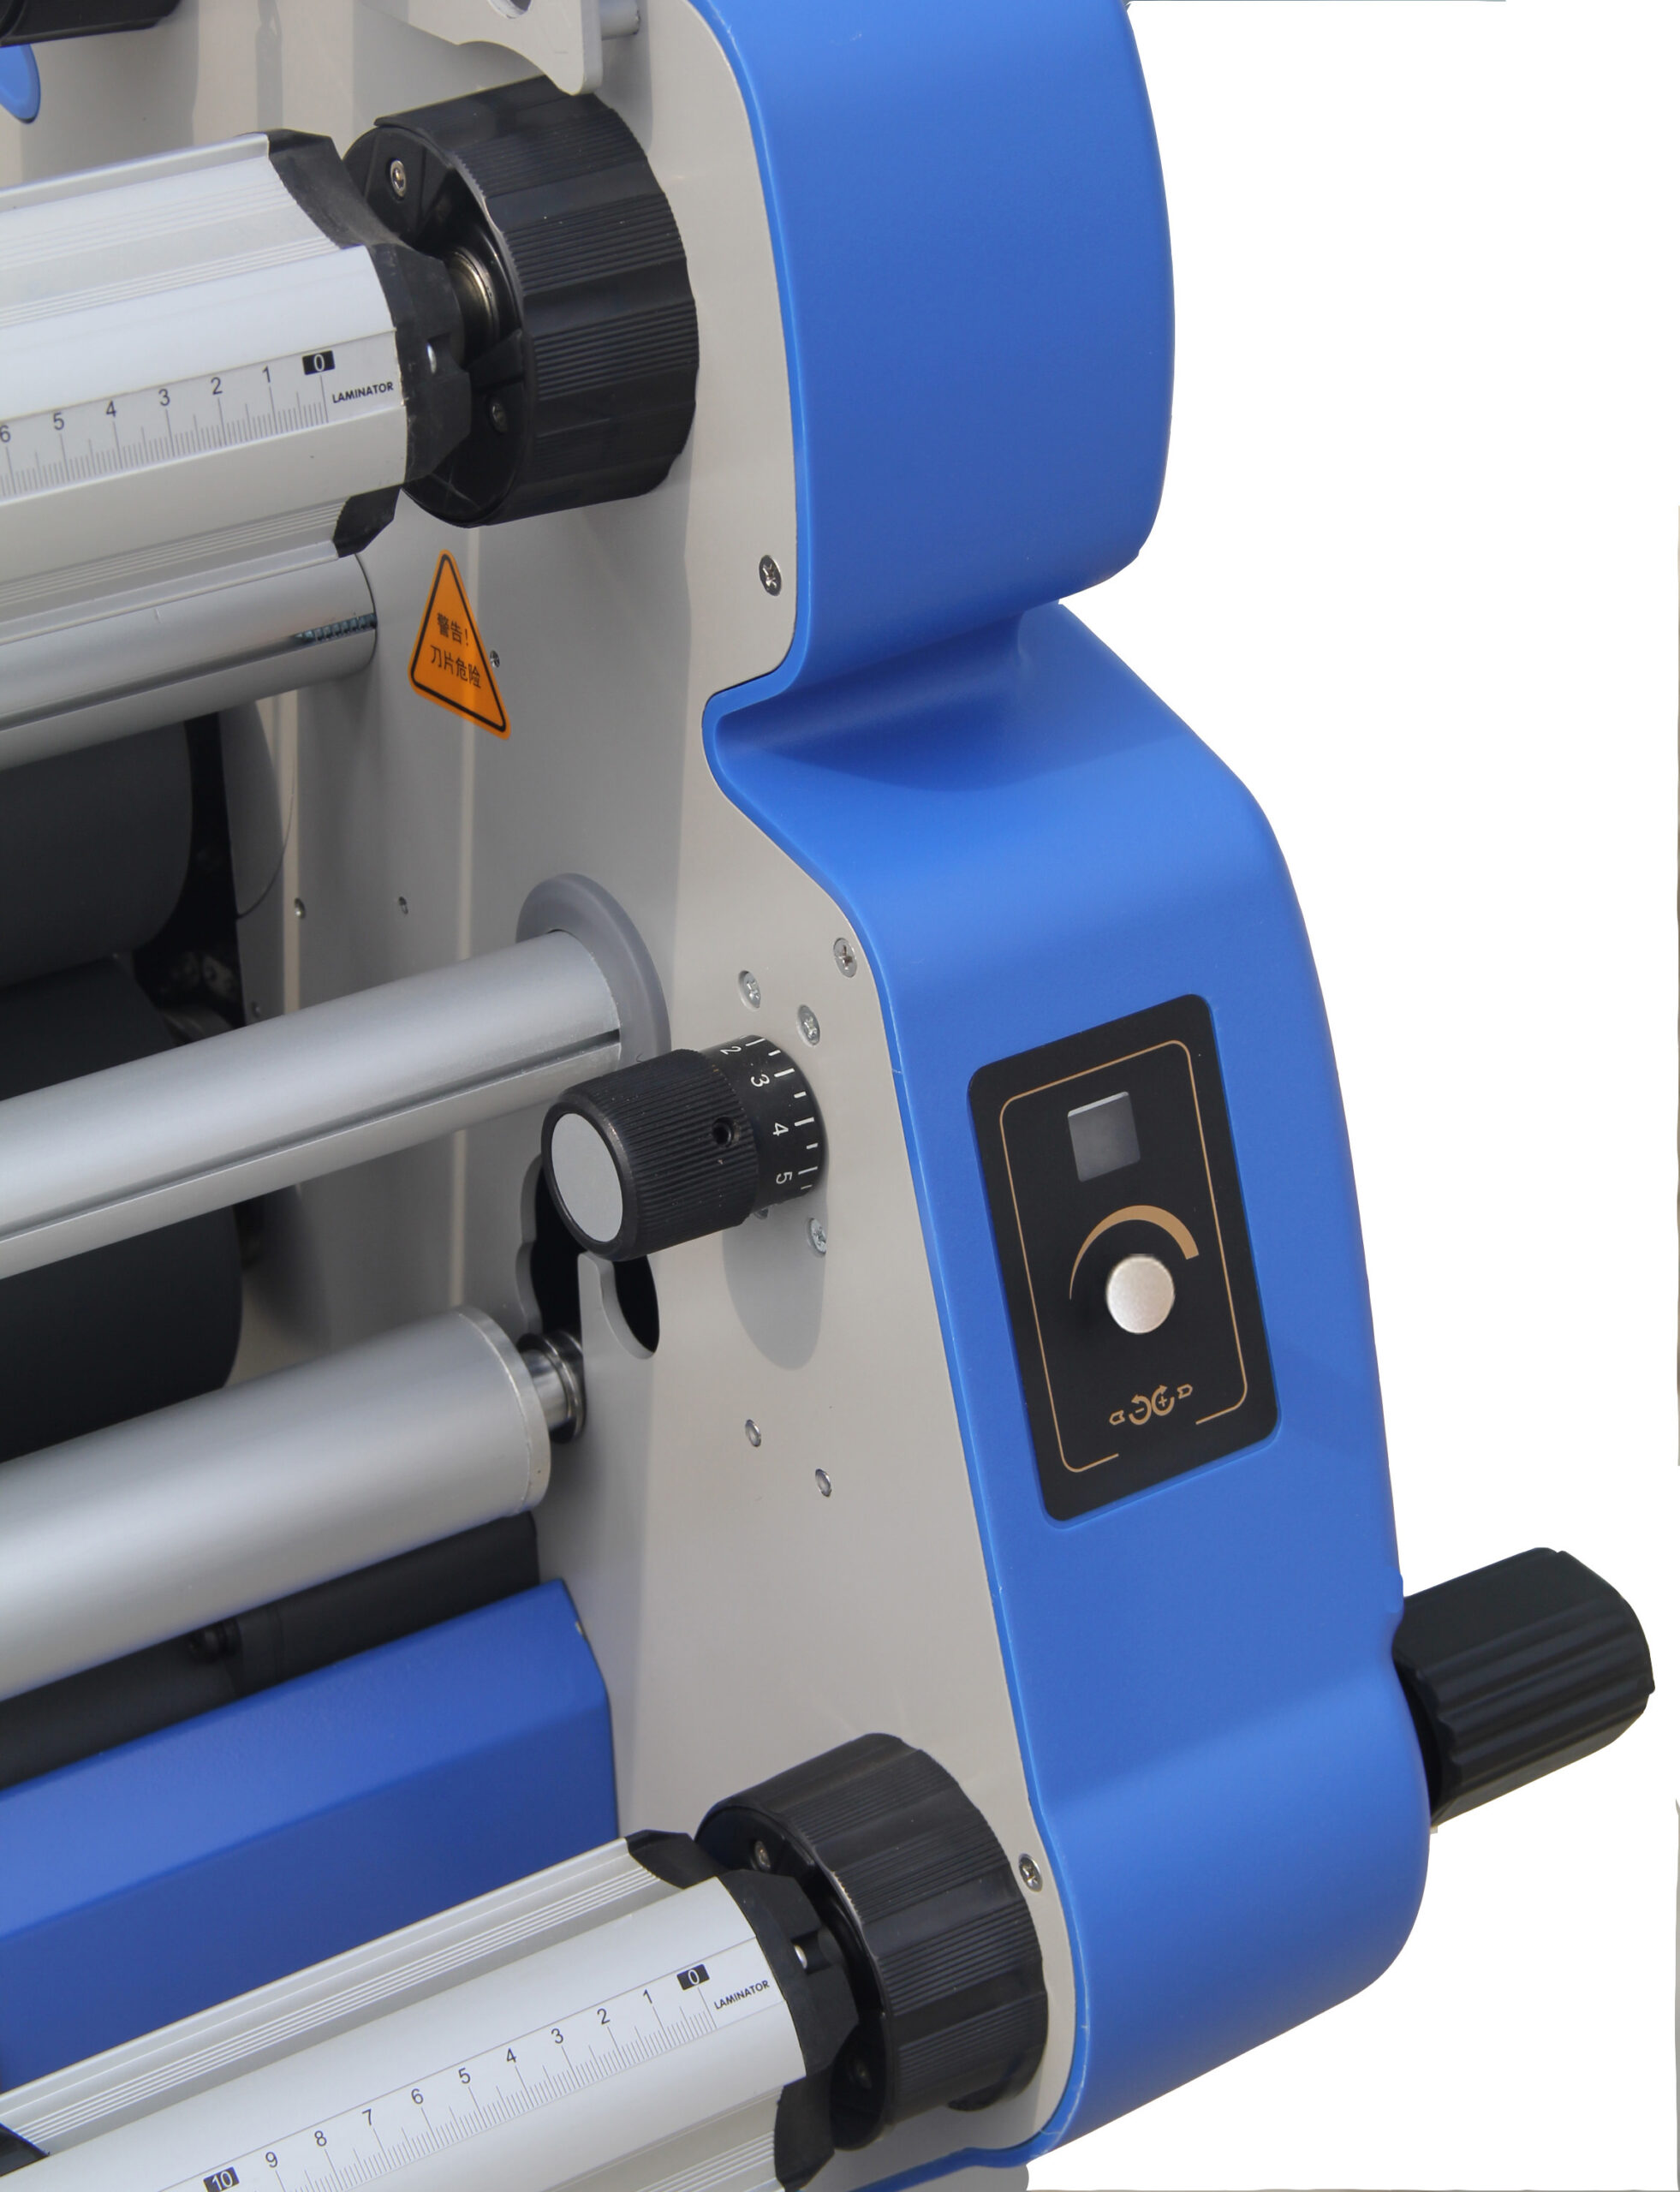 MF1700-M1 PLUS heat assist cold roll laminator